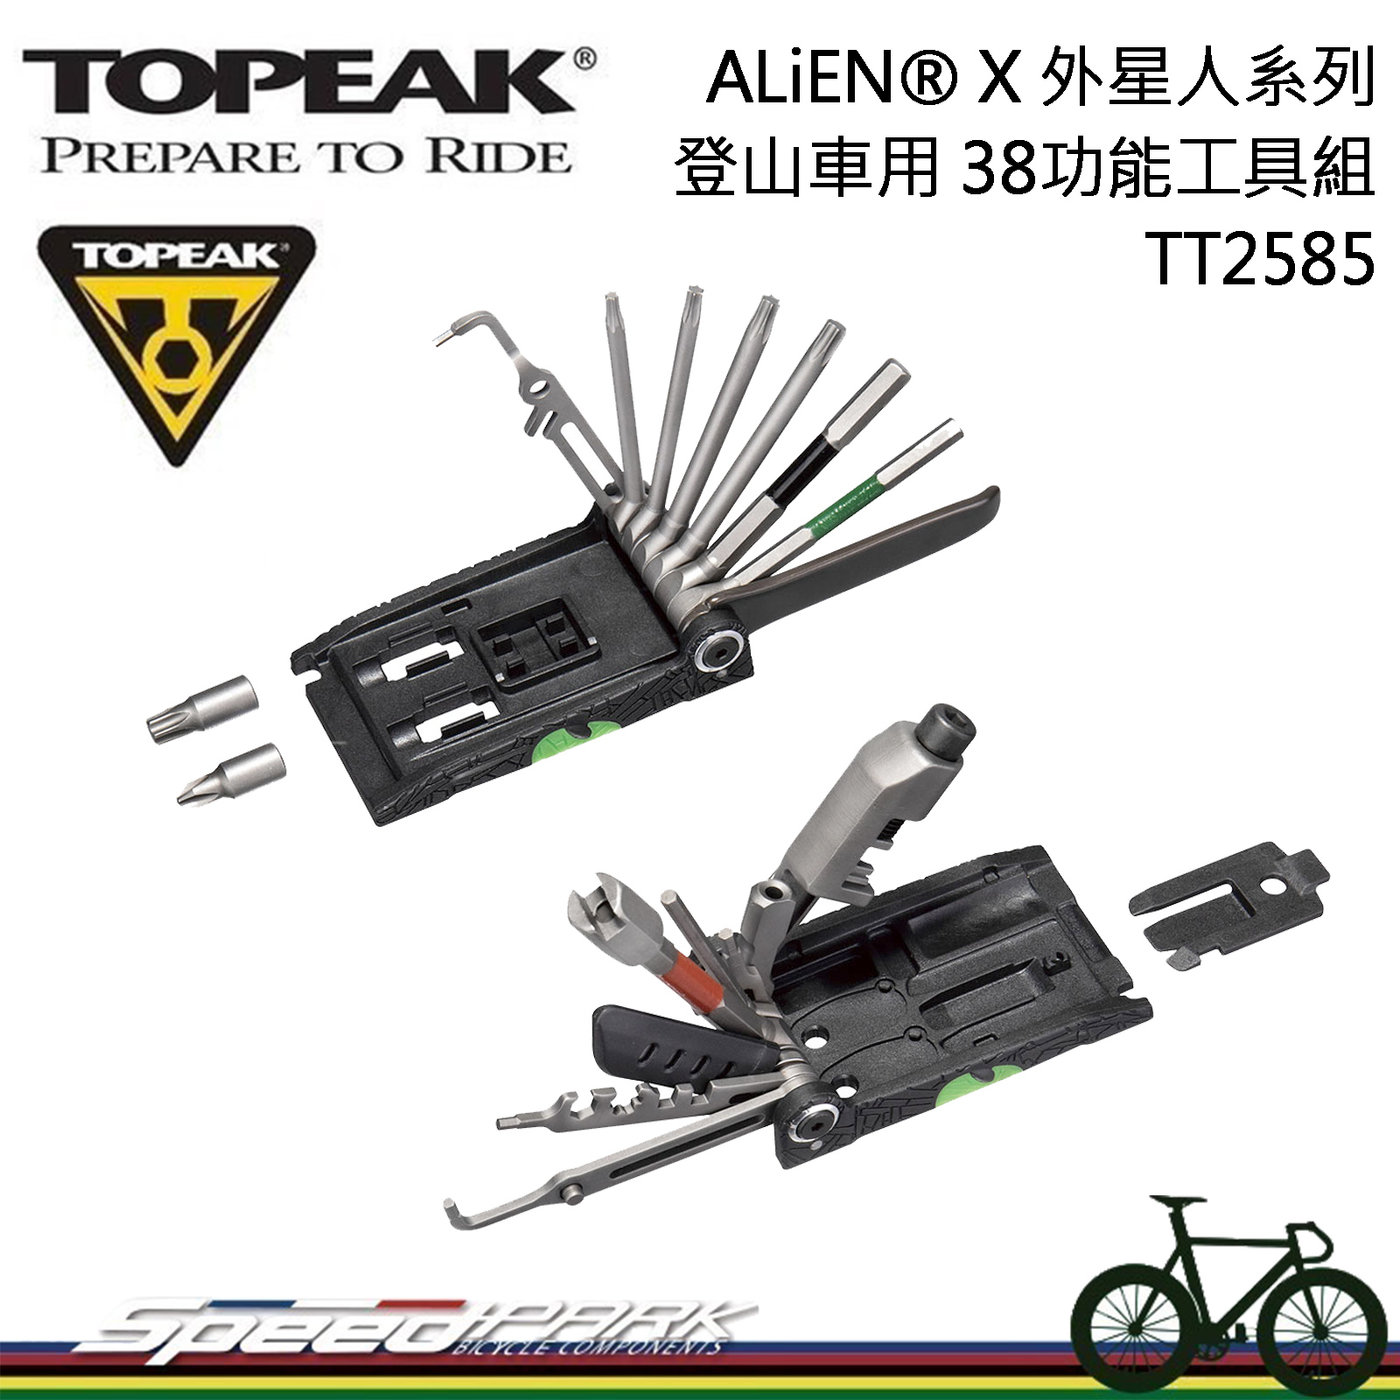 速度公園】TOPEAK ALiEN® X TT2585 外星人系列登山車折疊工具組氣嘴 